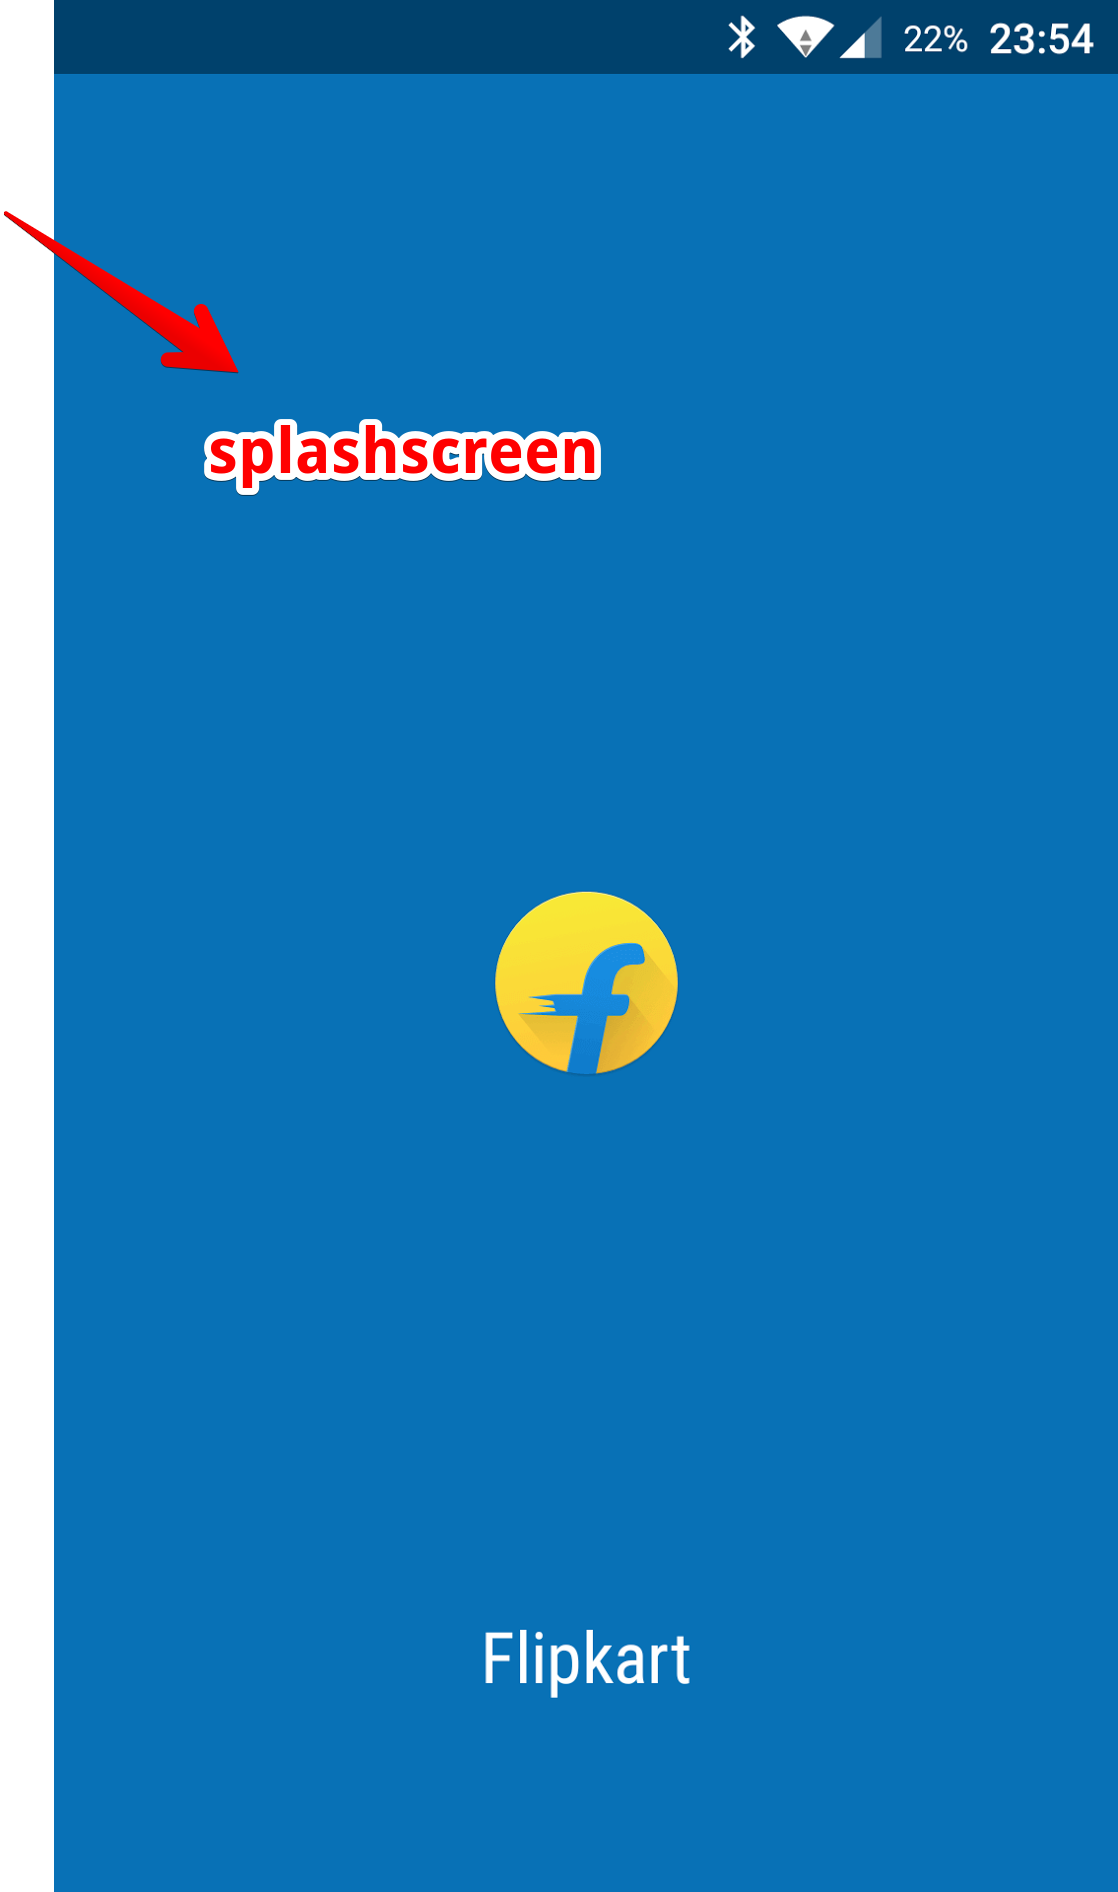 Flipkart Splashscreen